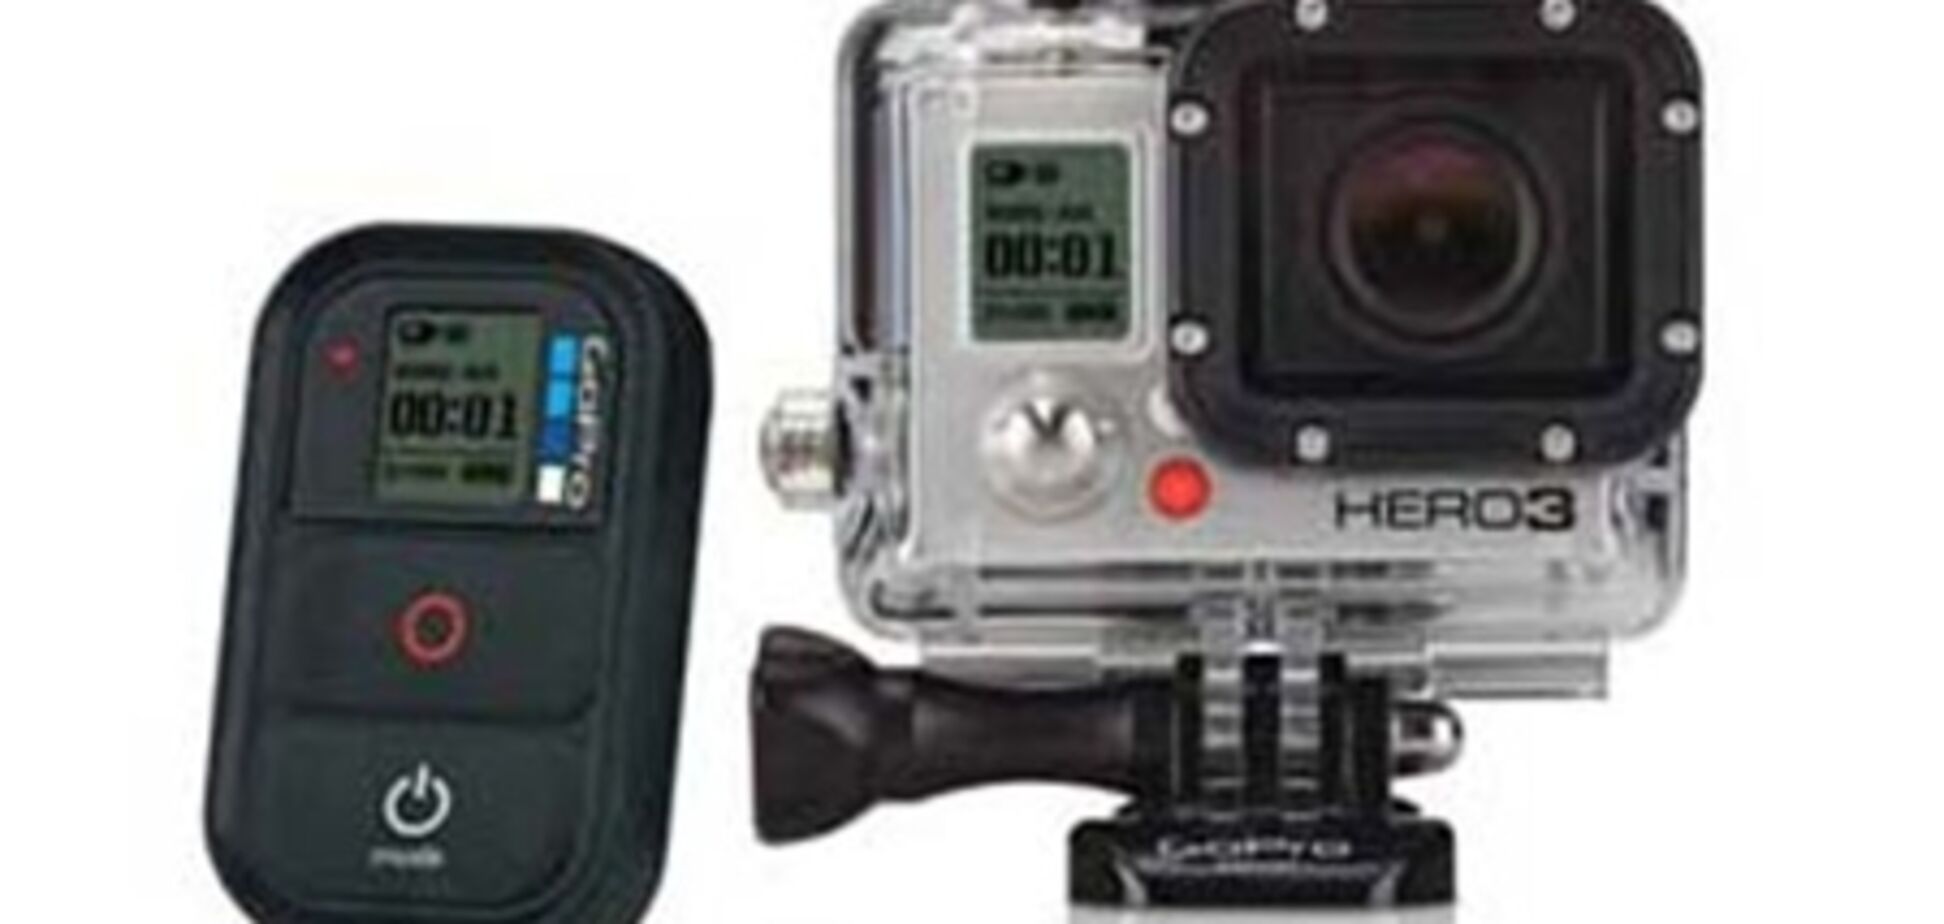 Что такое GoPro Hero 3, и какую камеру из серии себе выбрать?